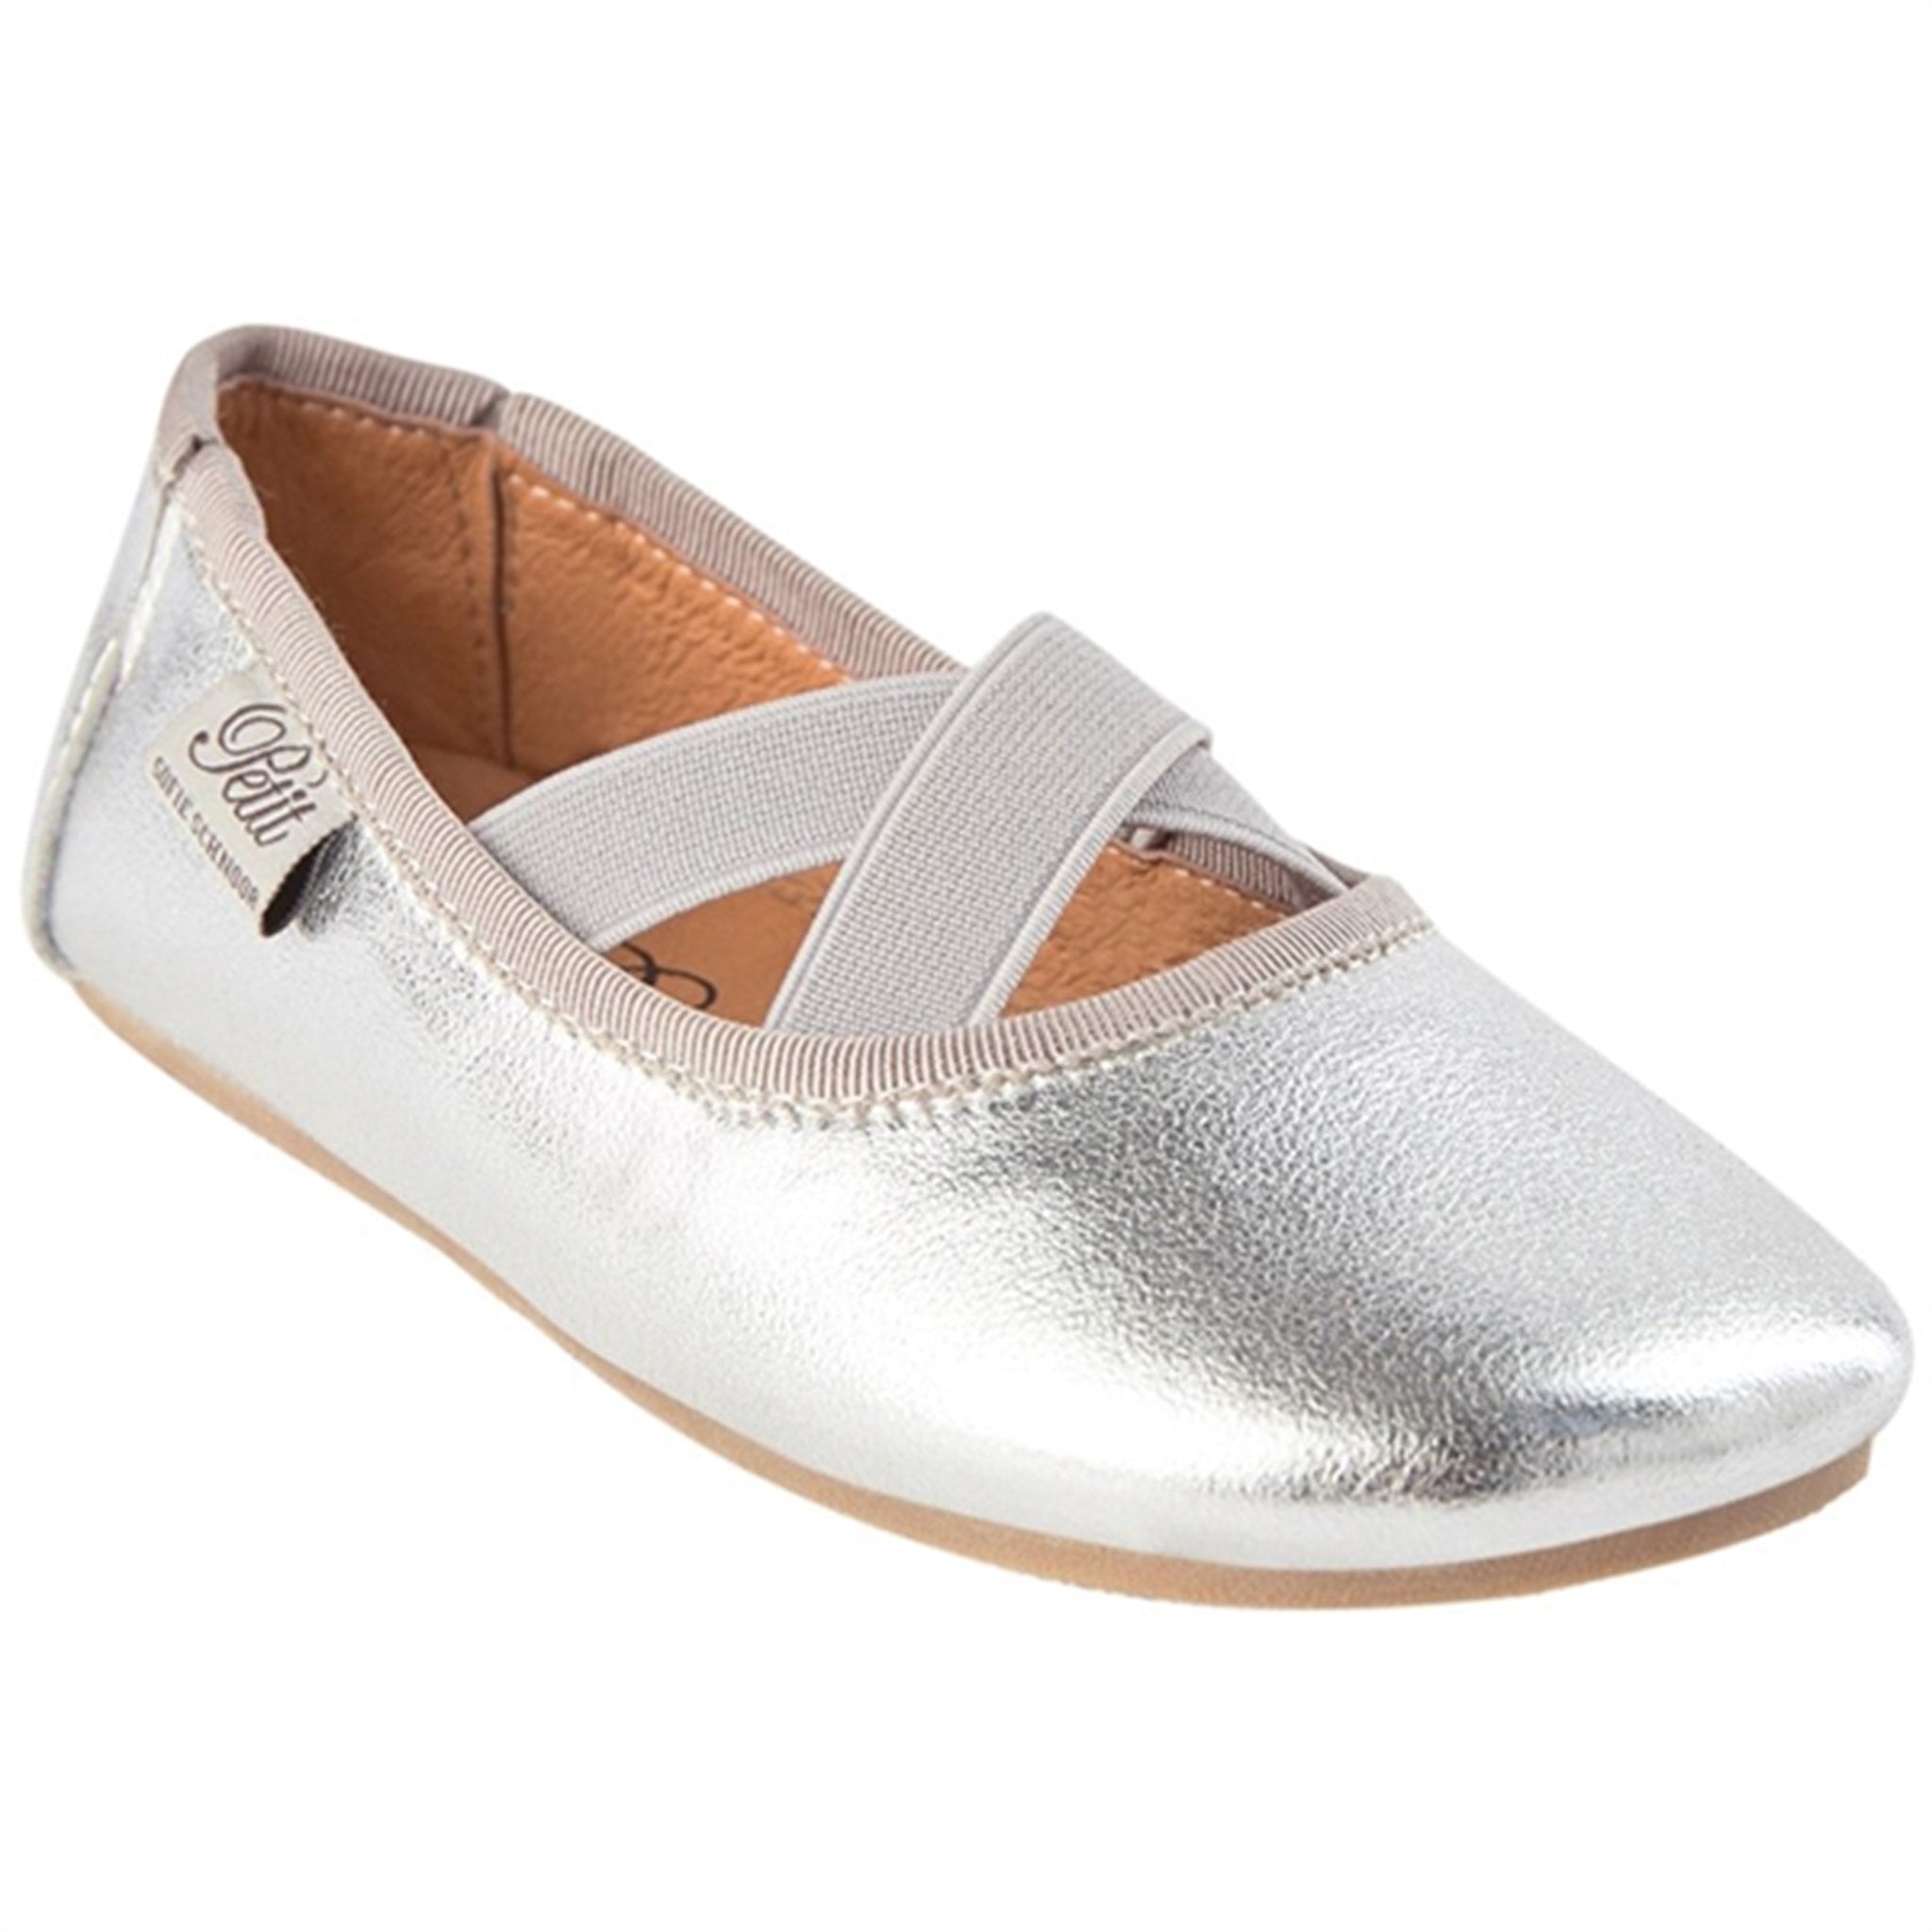 Sofie Schnoor Indoor Shoes Silver